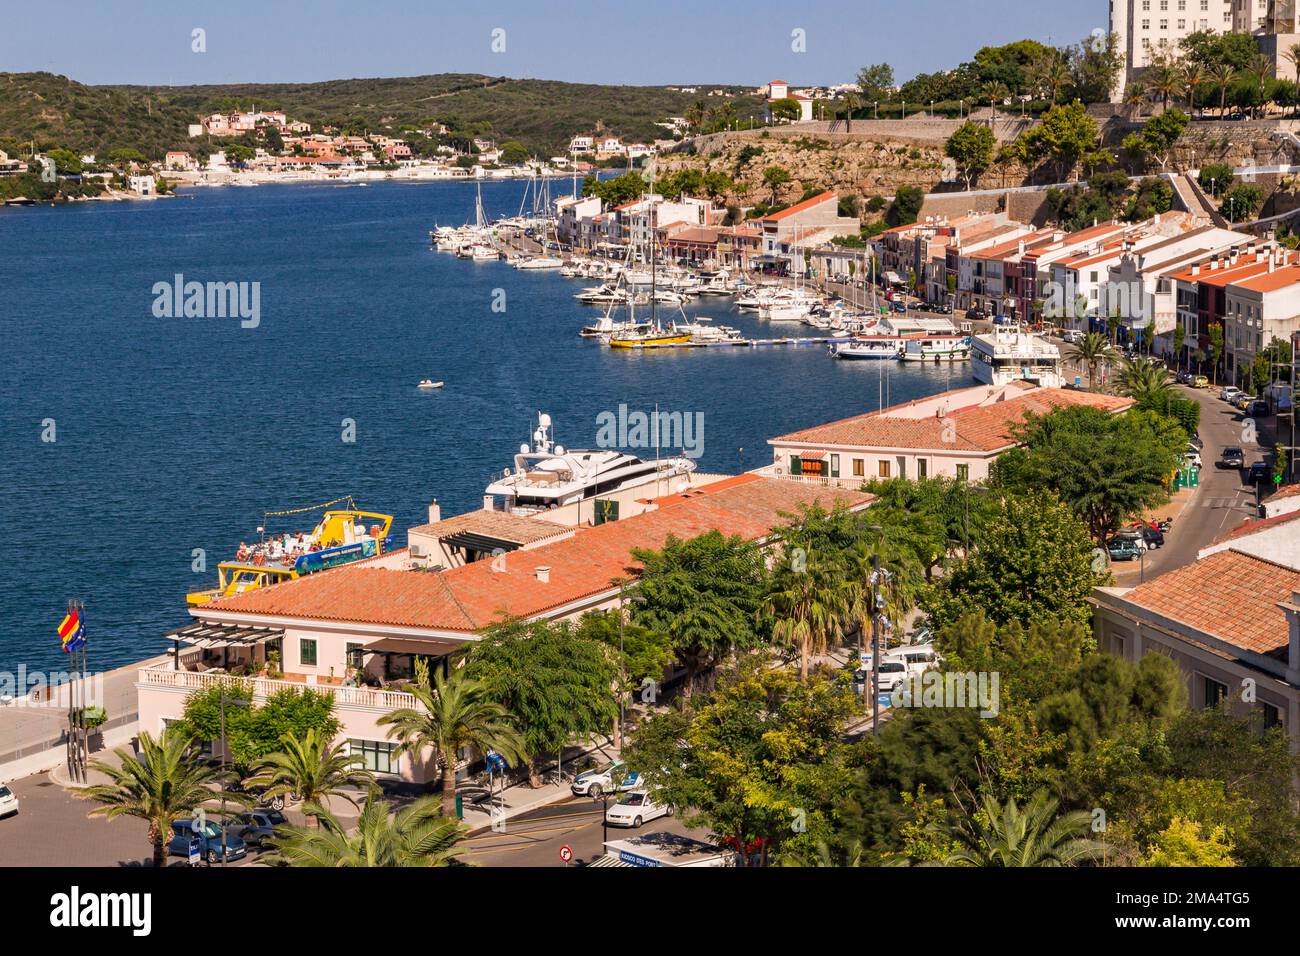 Der Hafen und die farbenfrohe Uferpromenade der Hauptstadt Mahon auf der balearischen Insel Menorca, Spanien Stockfoto